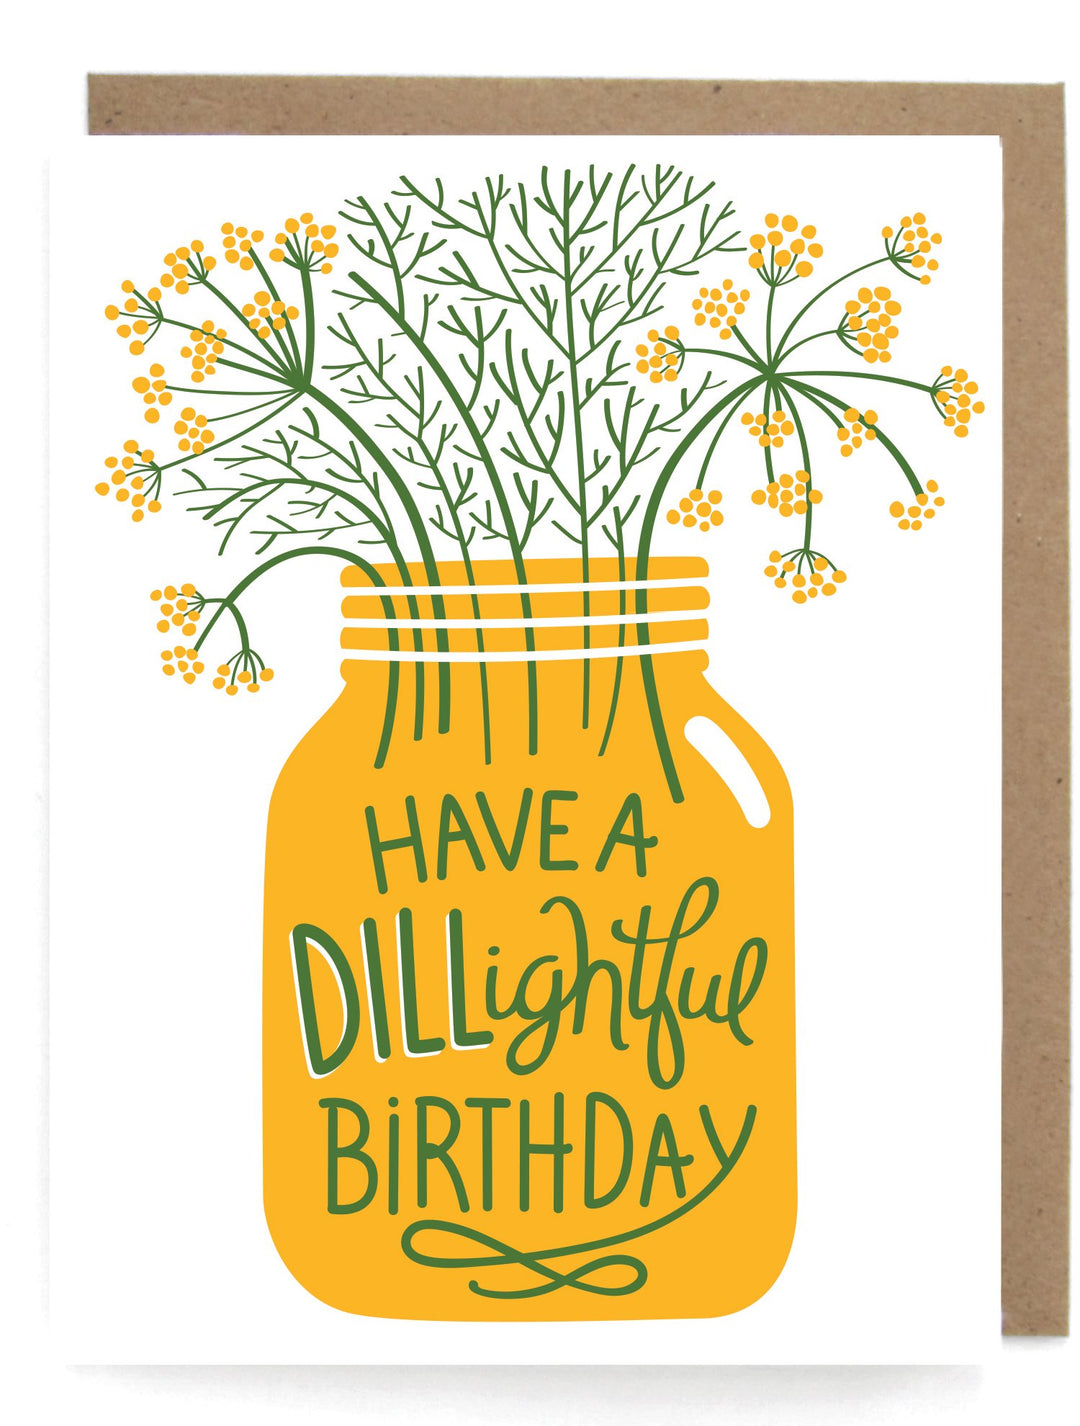 DILL-lightful Birthday Card